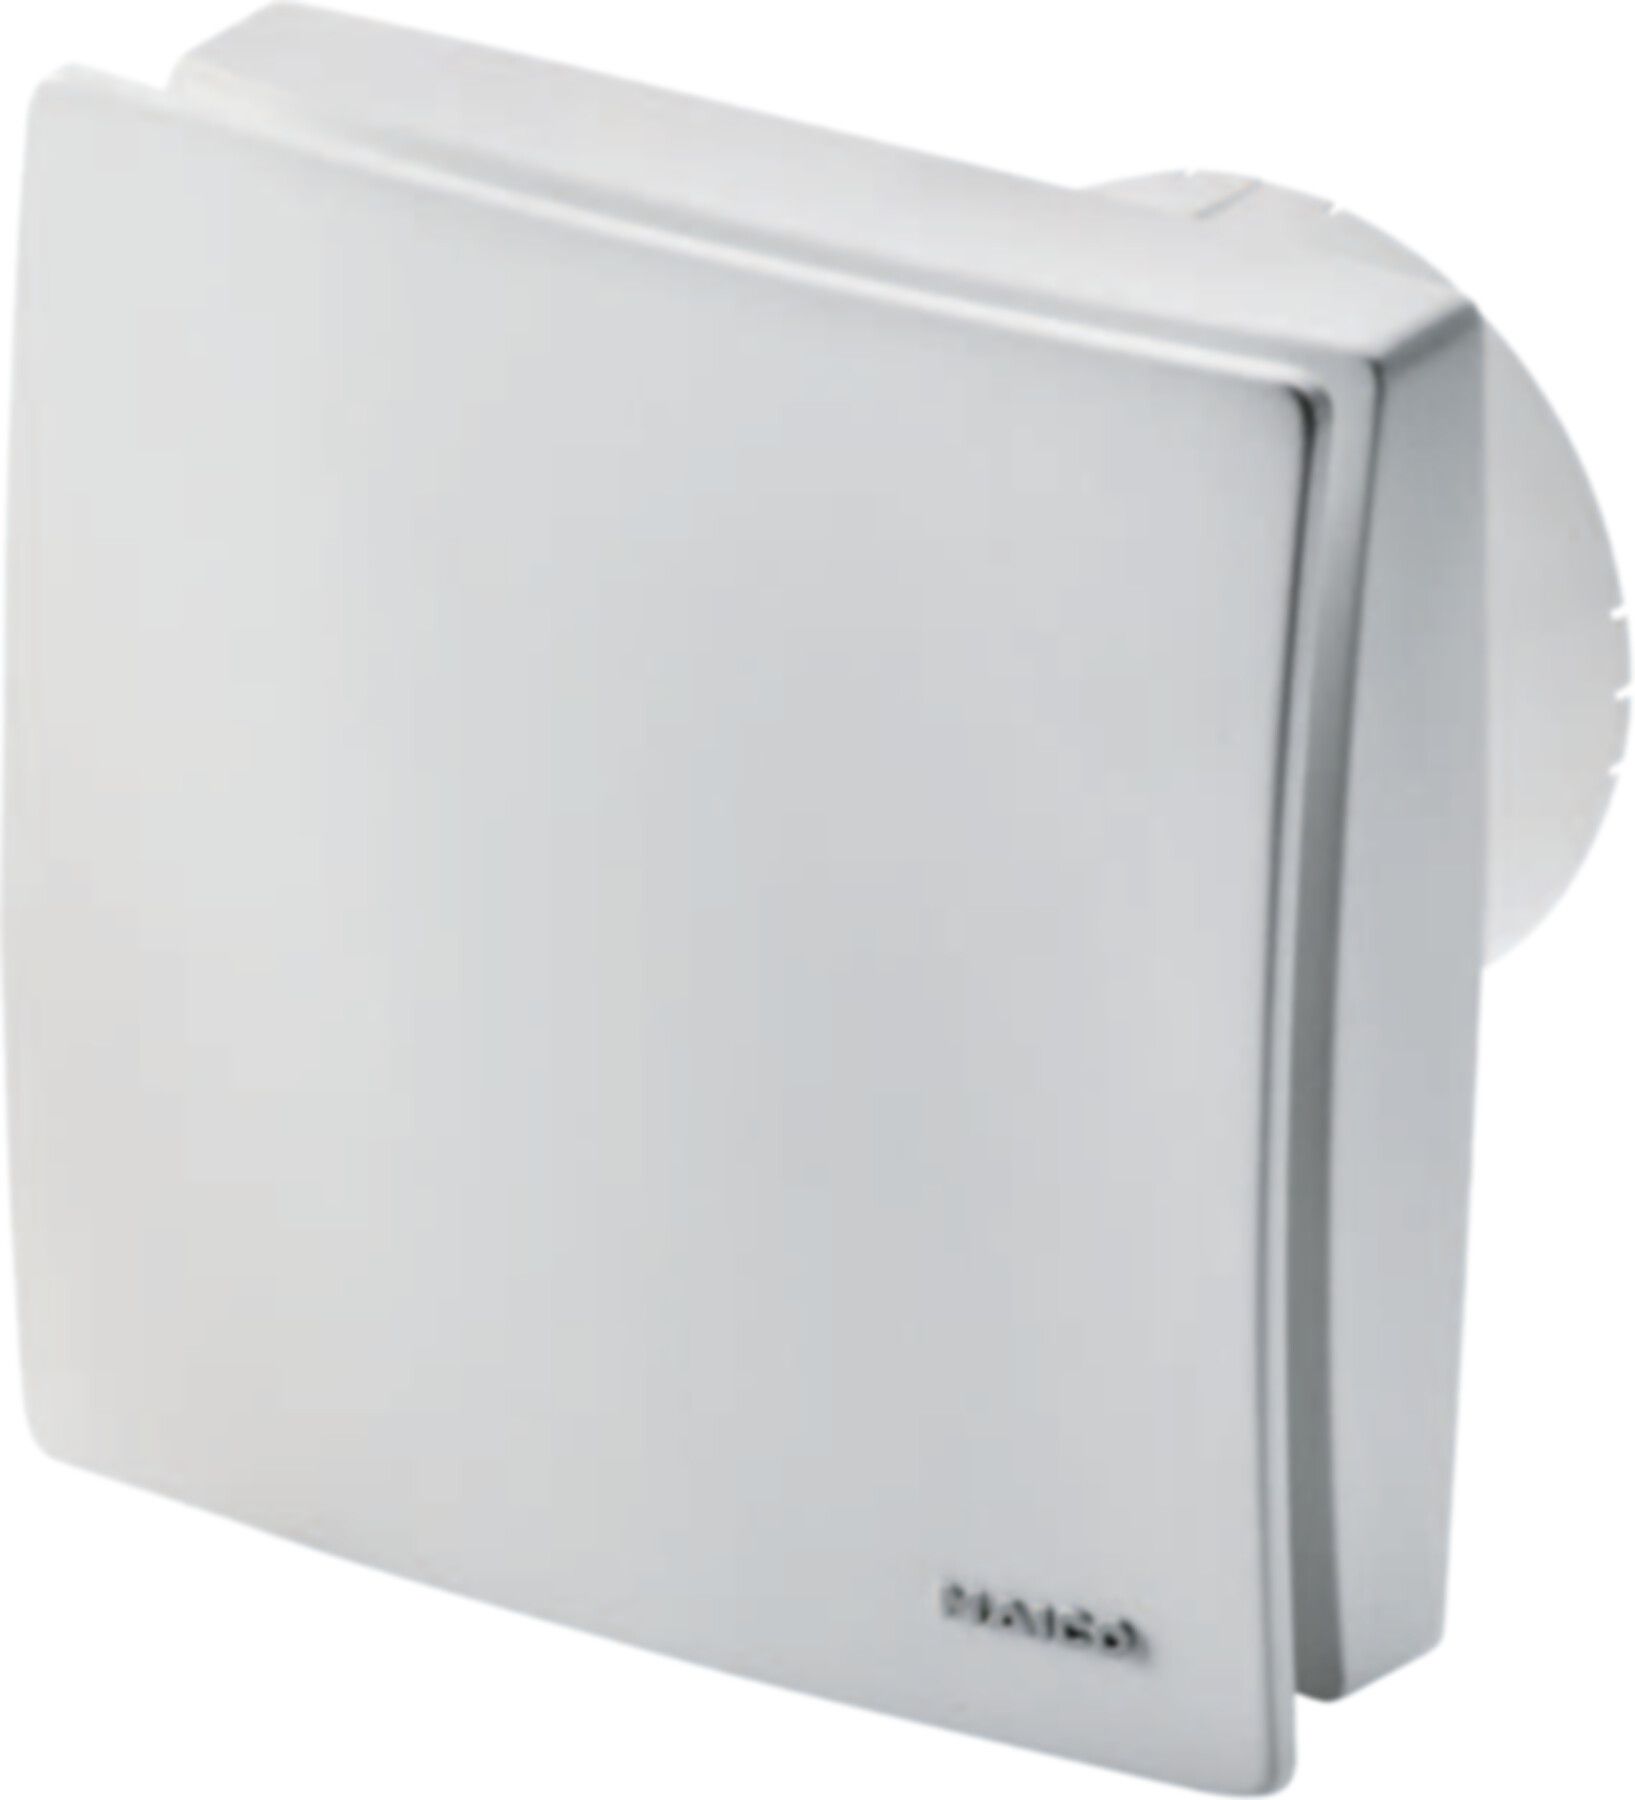 Bad / WC-Ventilatoren COMPETAIR Maico ECA 100 ipro KH